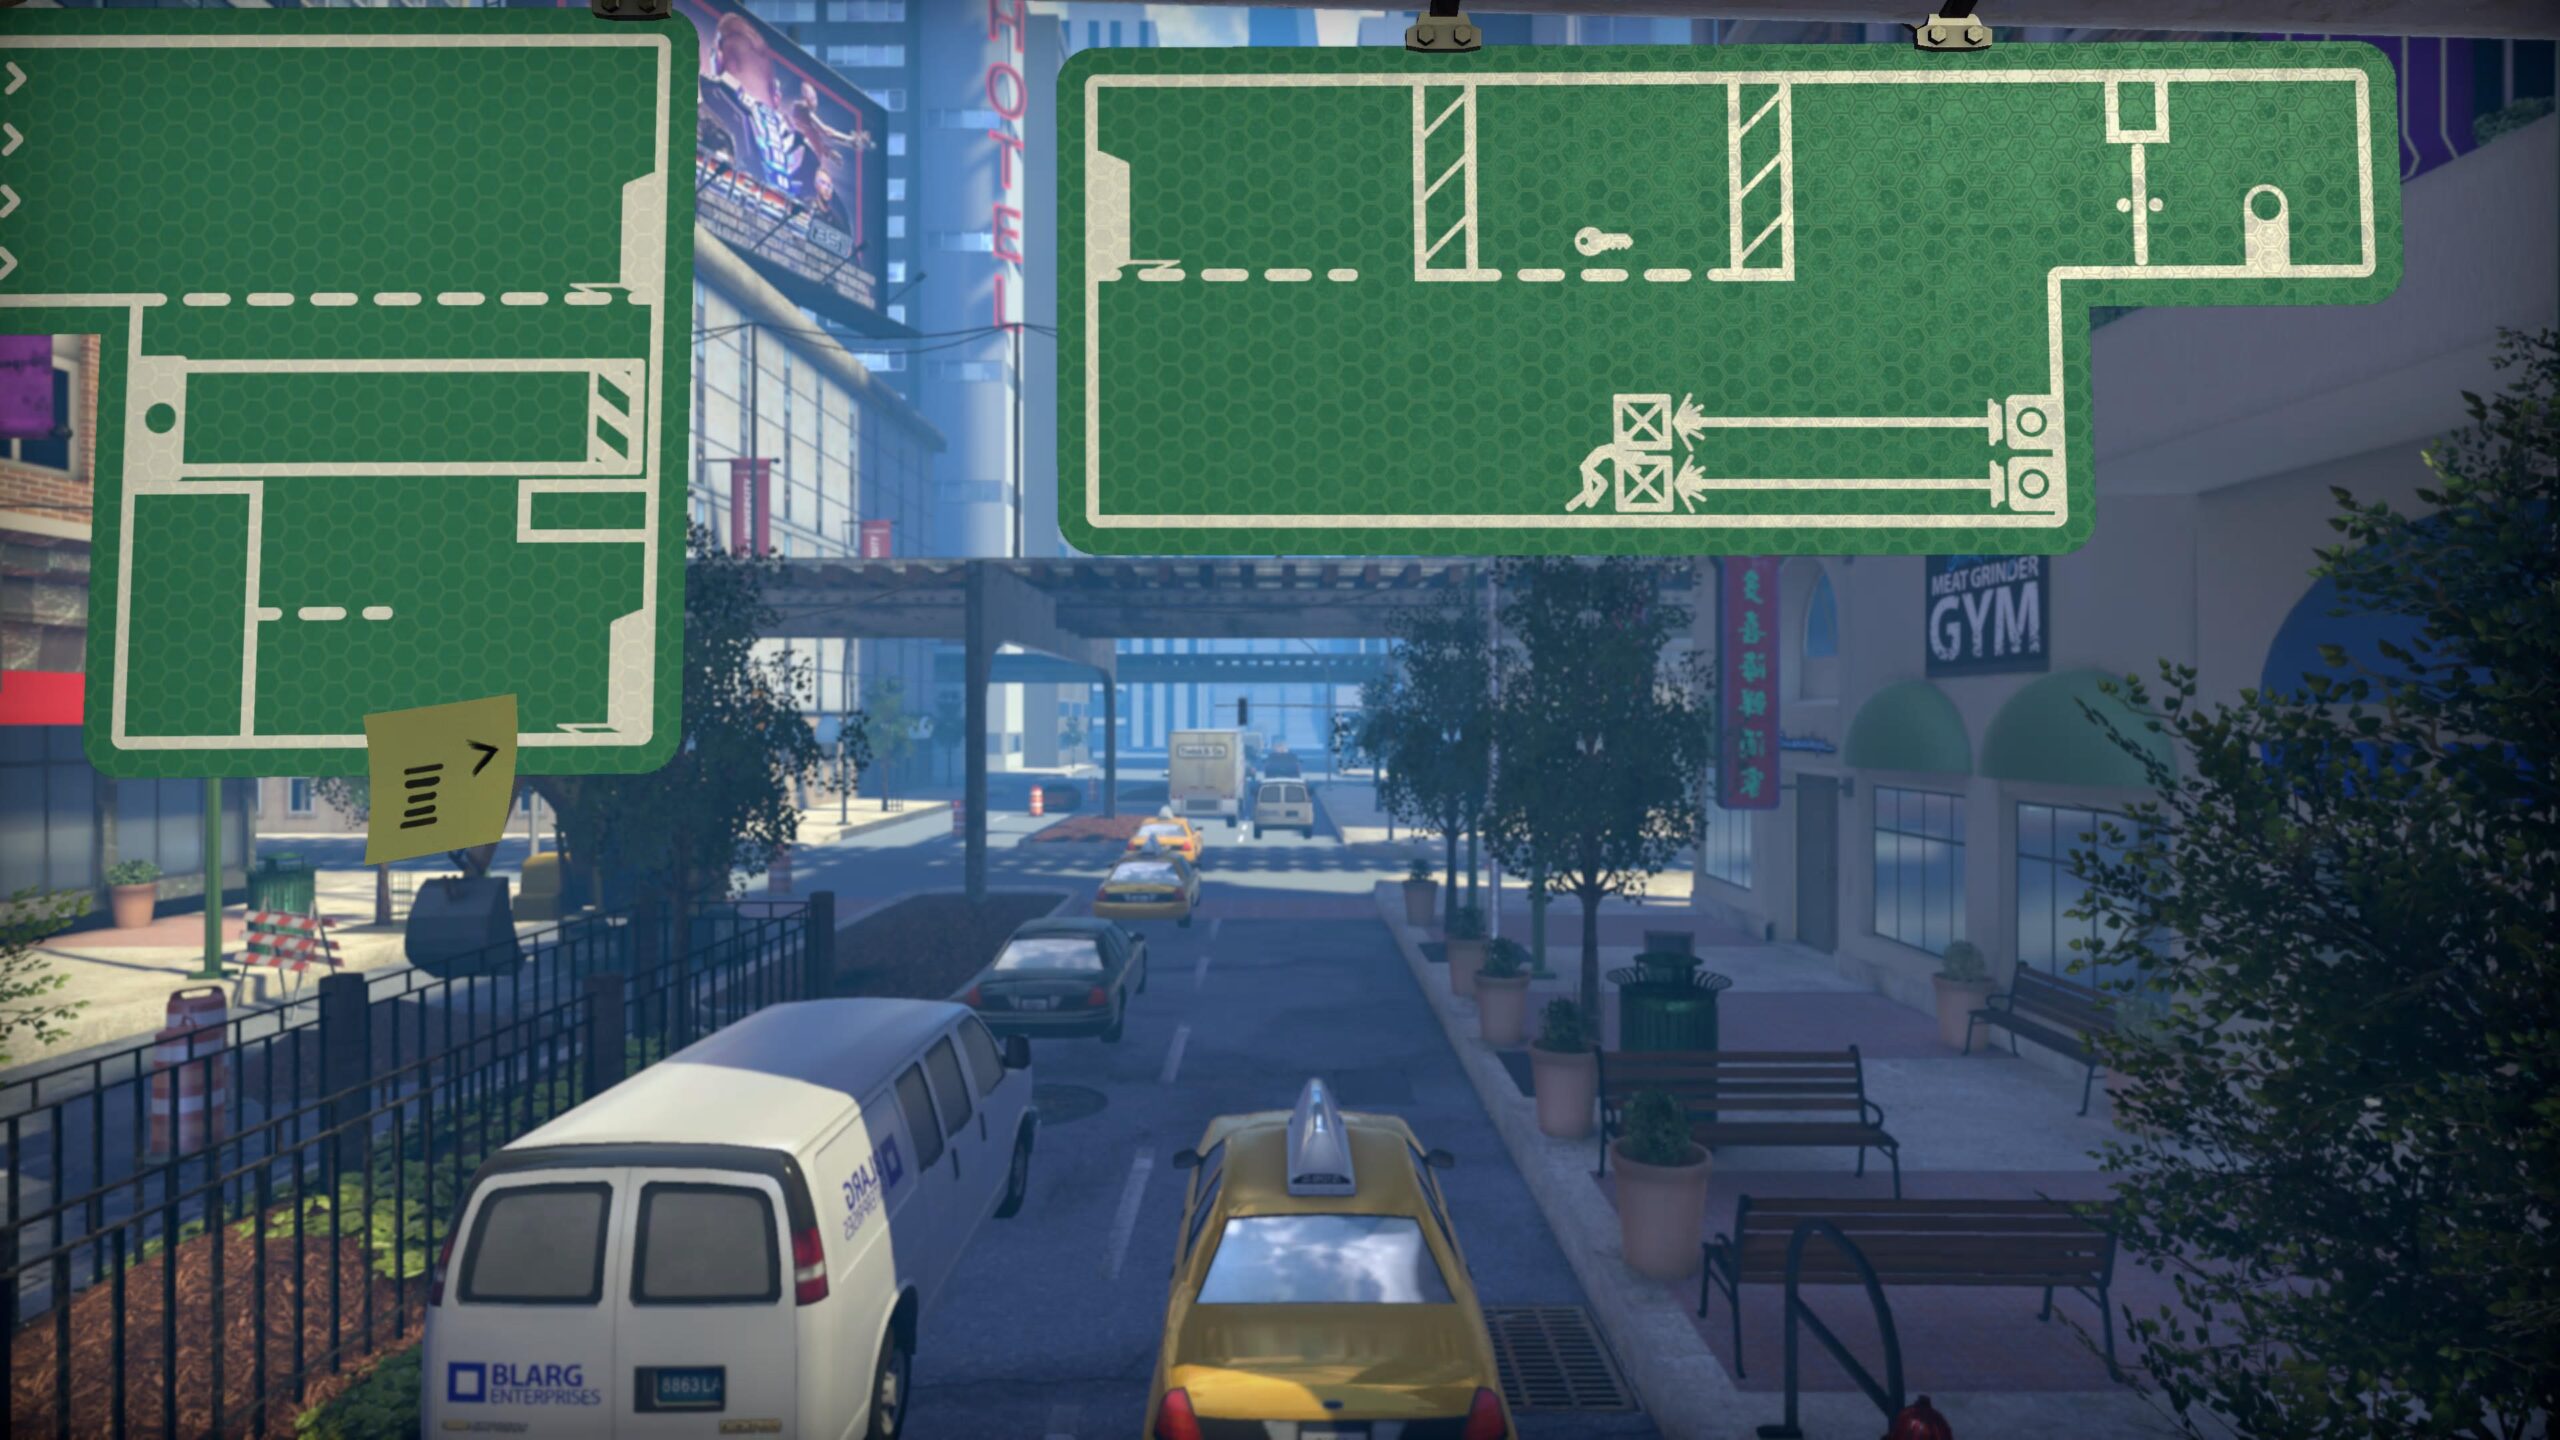 Сюрприз: The Pedestrian добавили в Game Pass сразу после релиза